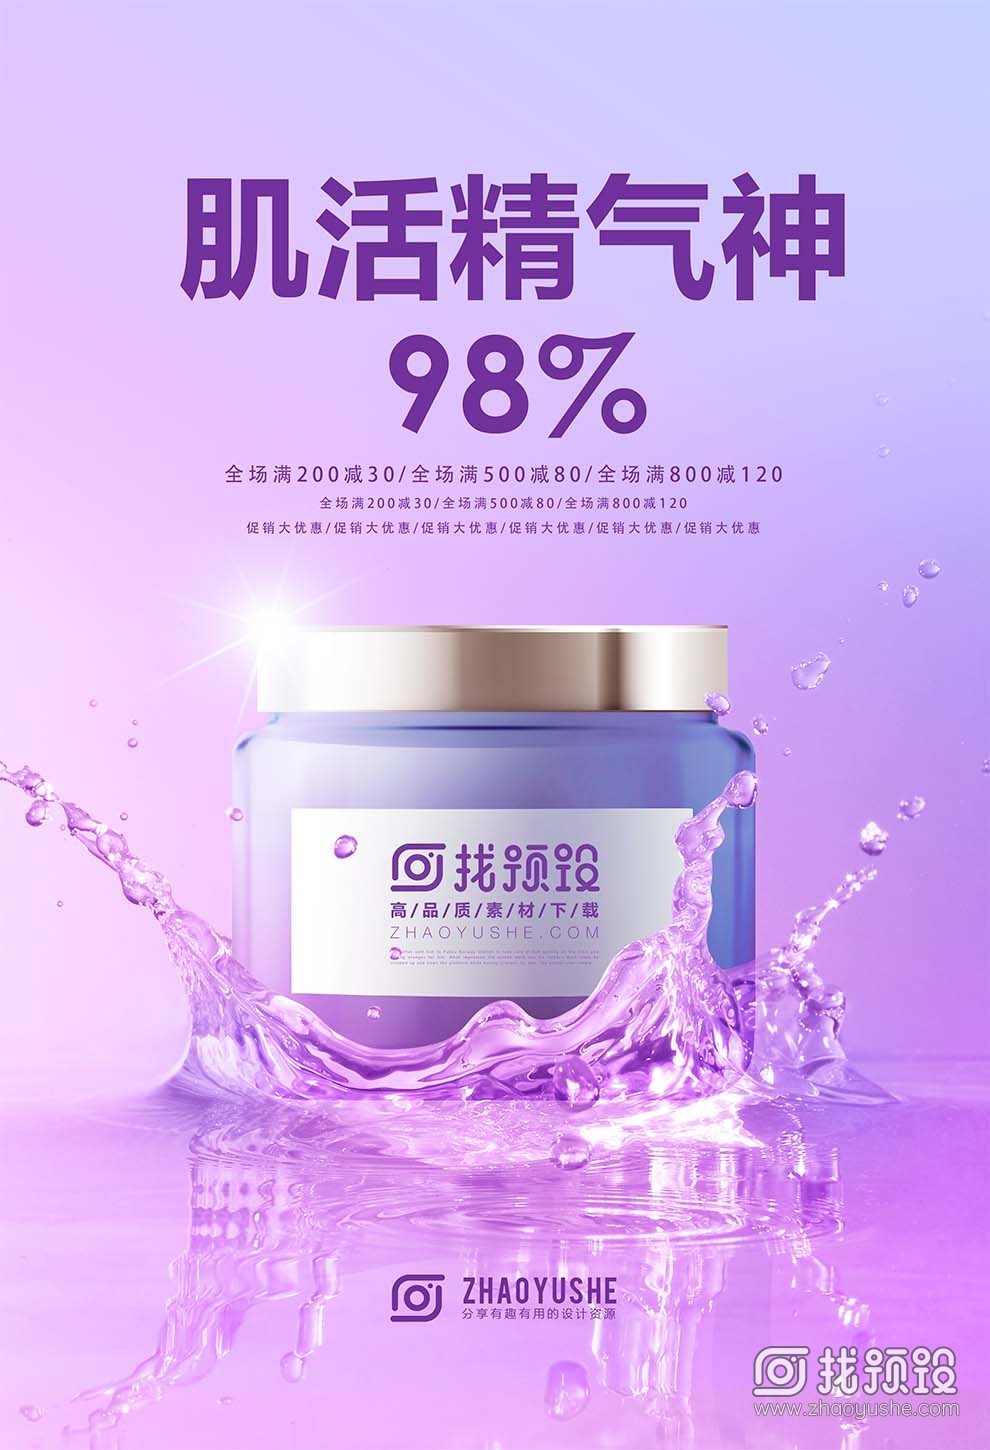 找预设网紫色化妆品广告设计psd2023年3月29日 2023010719334038